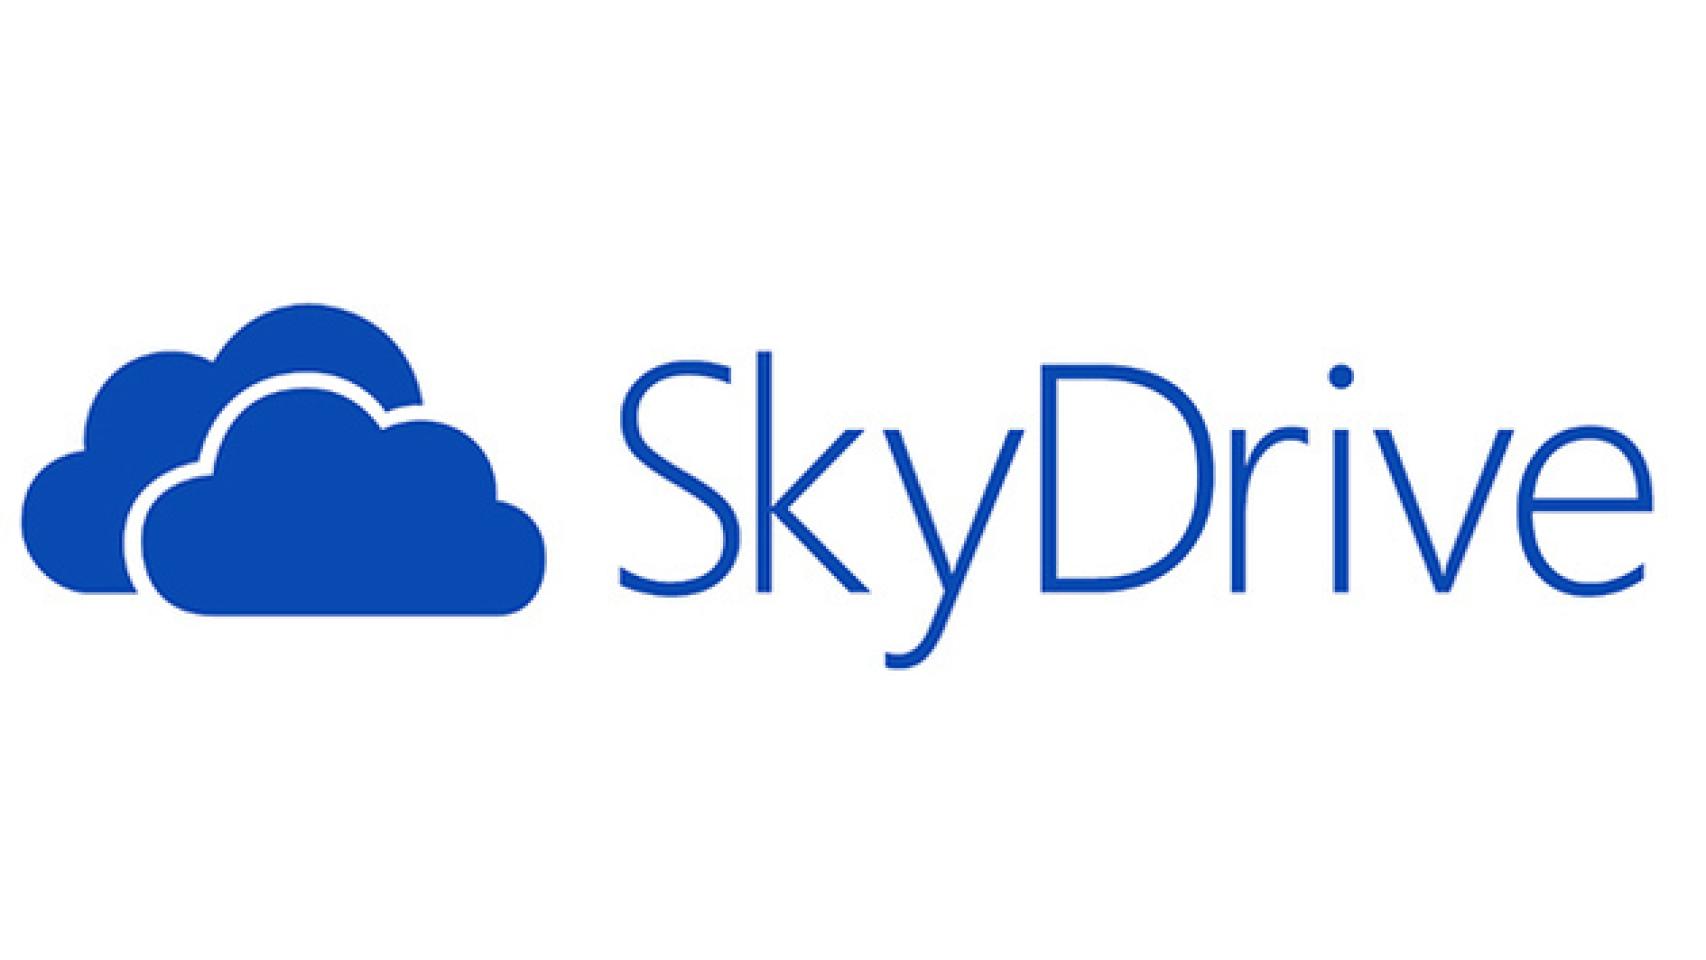 Microsoft ya prepara SkyDrive para Android